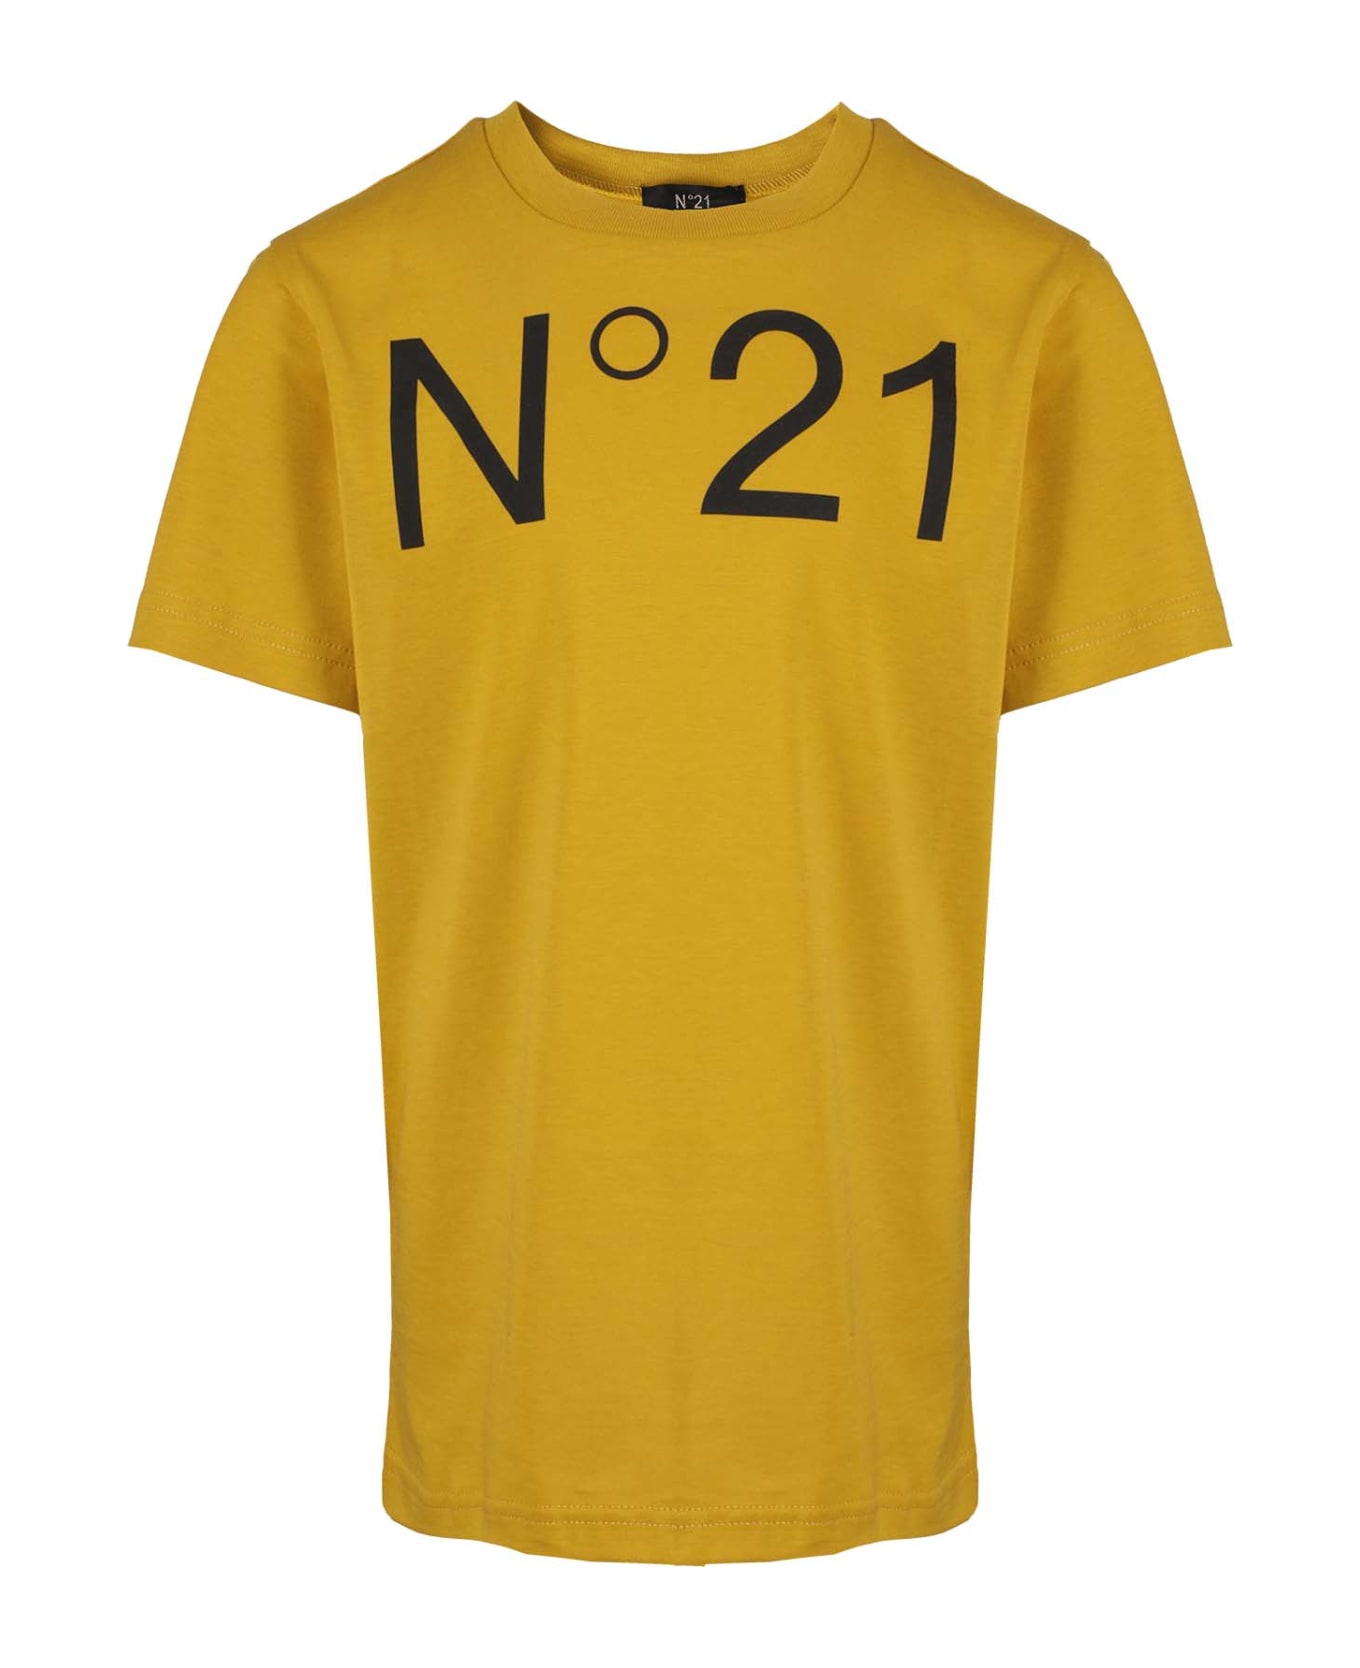 N.21 Maglietta - Mustard Yellow